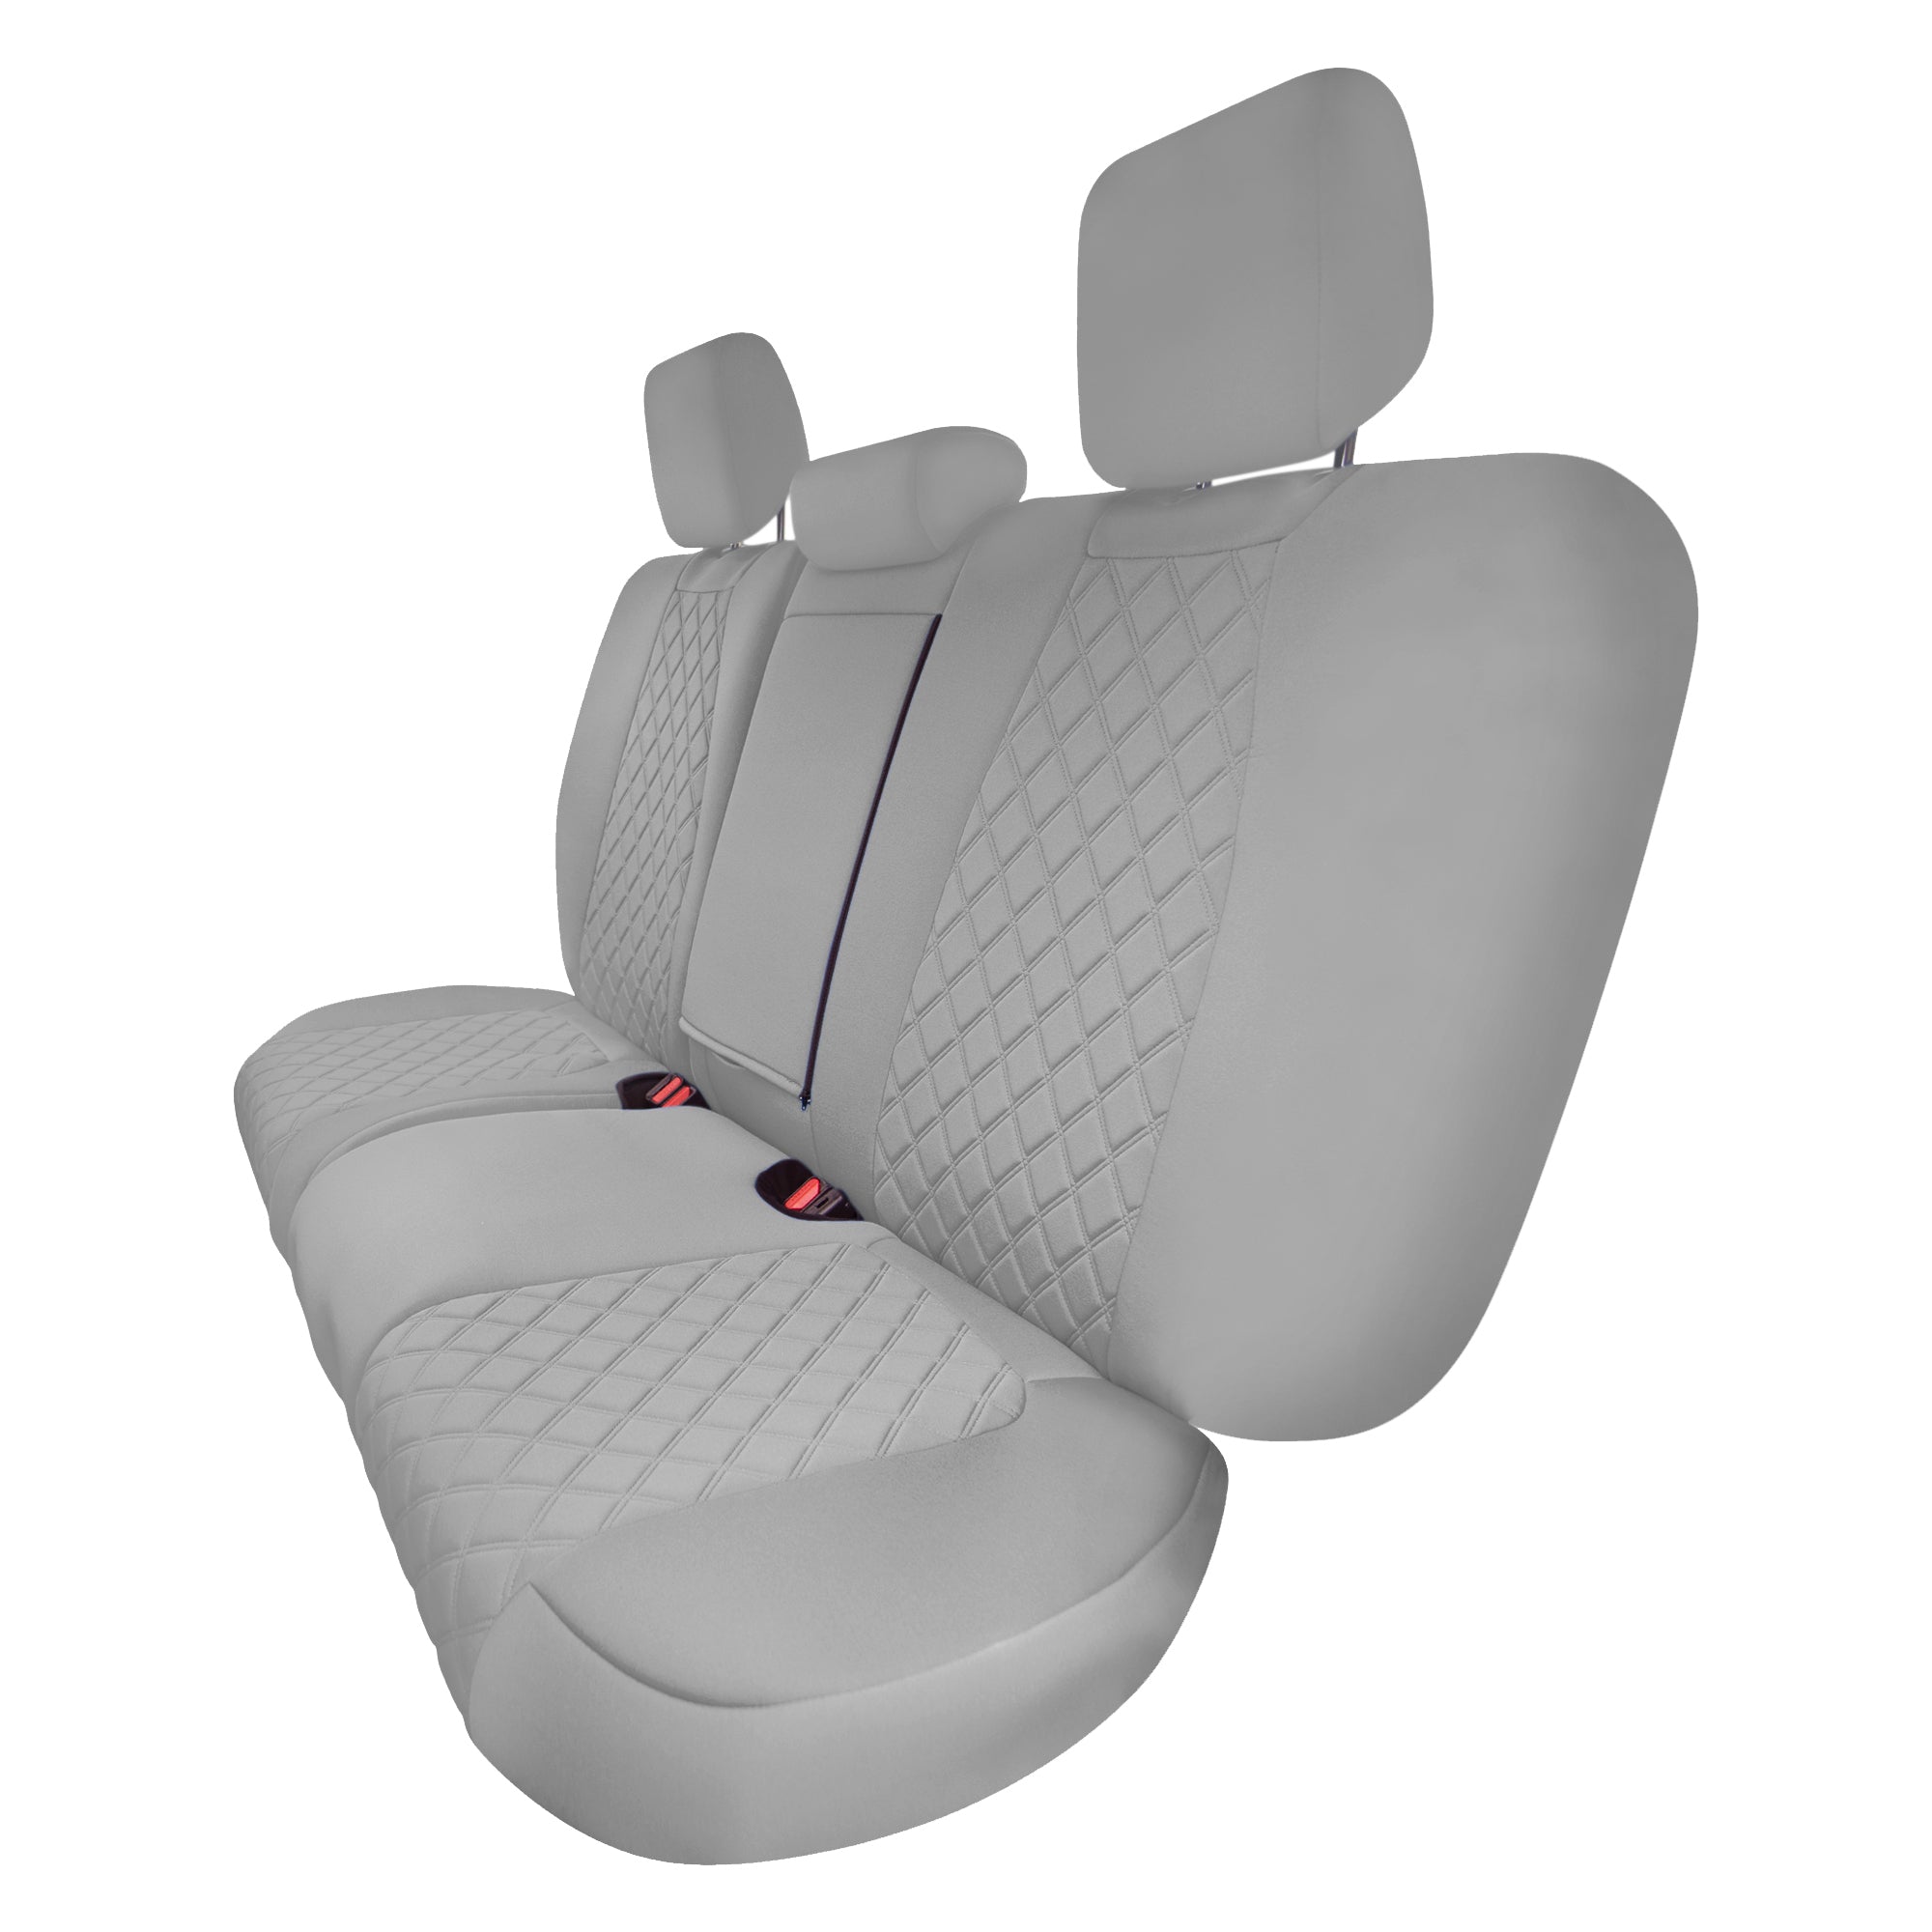 Honda CR-V 2017-2022 - Rear Set Seat Covers -  Solid Gray Ultraflex Neoprene